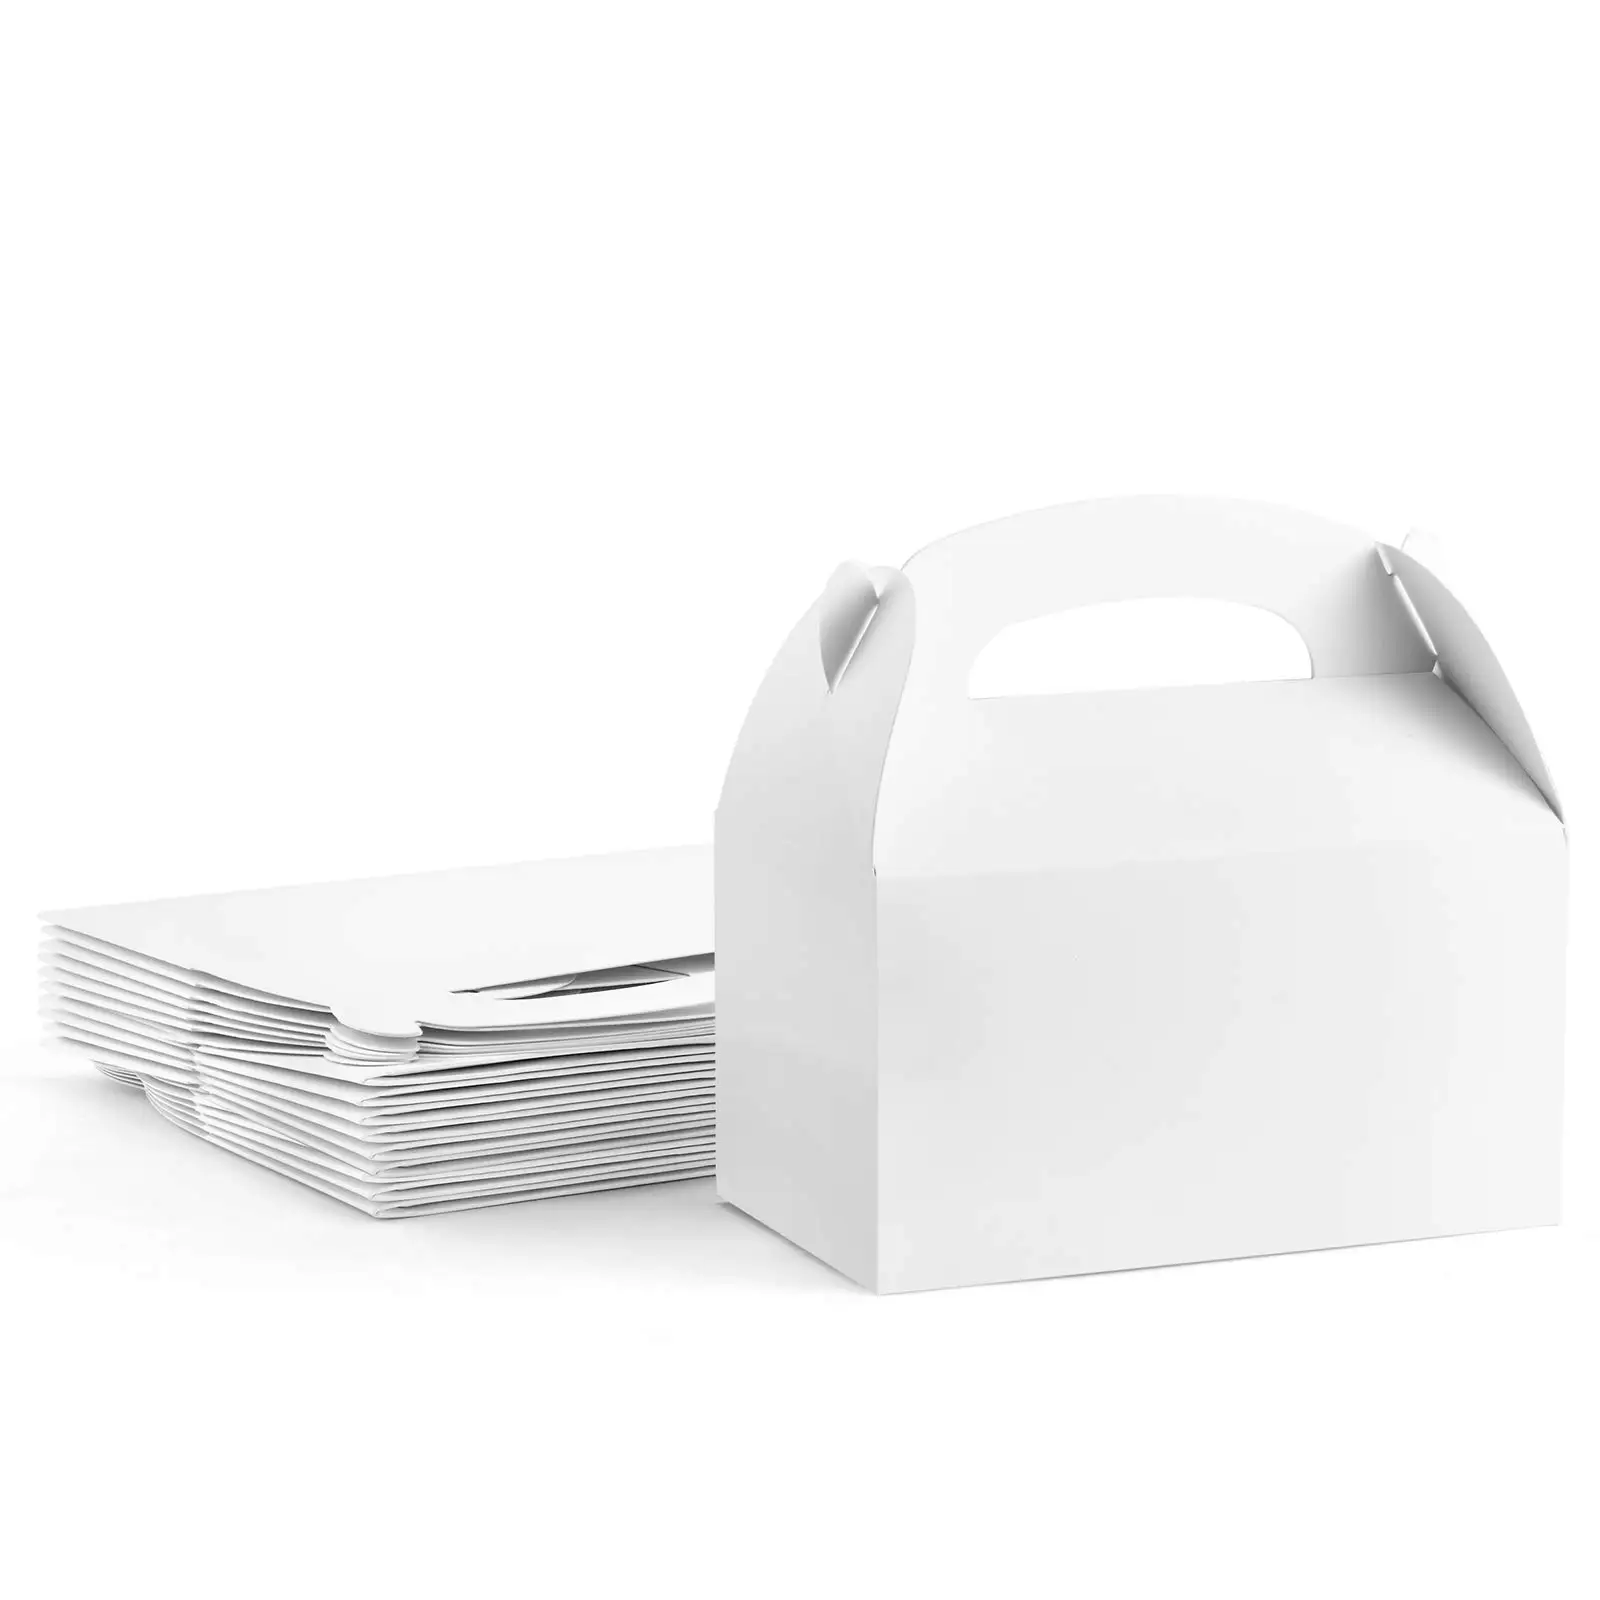 Scatole per timpano grandi da 10 pezzi scatole regalo bianche con manici scatole da forno scatole